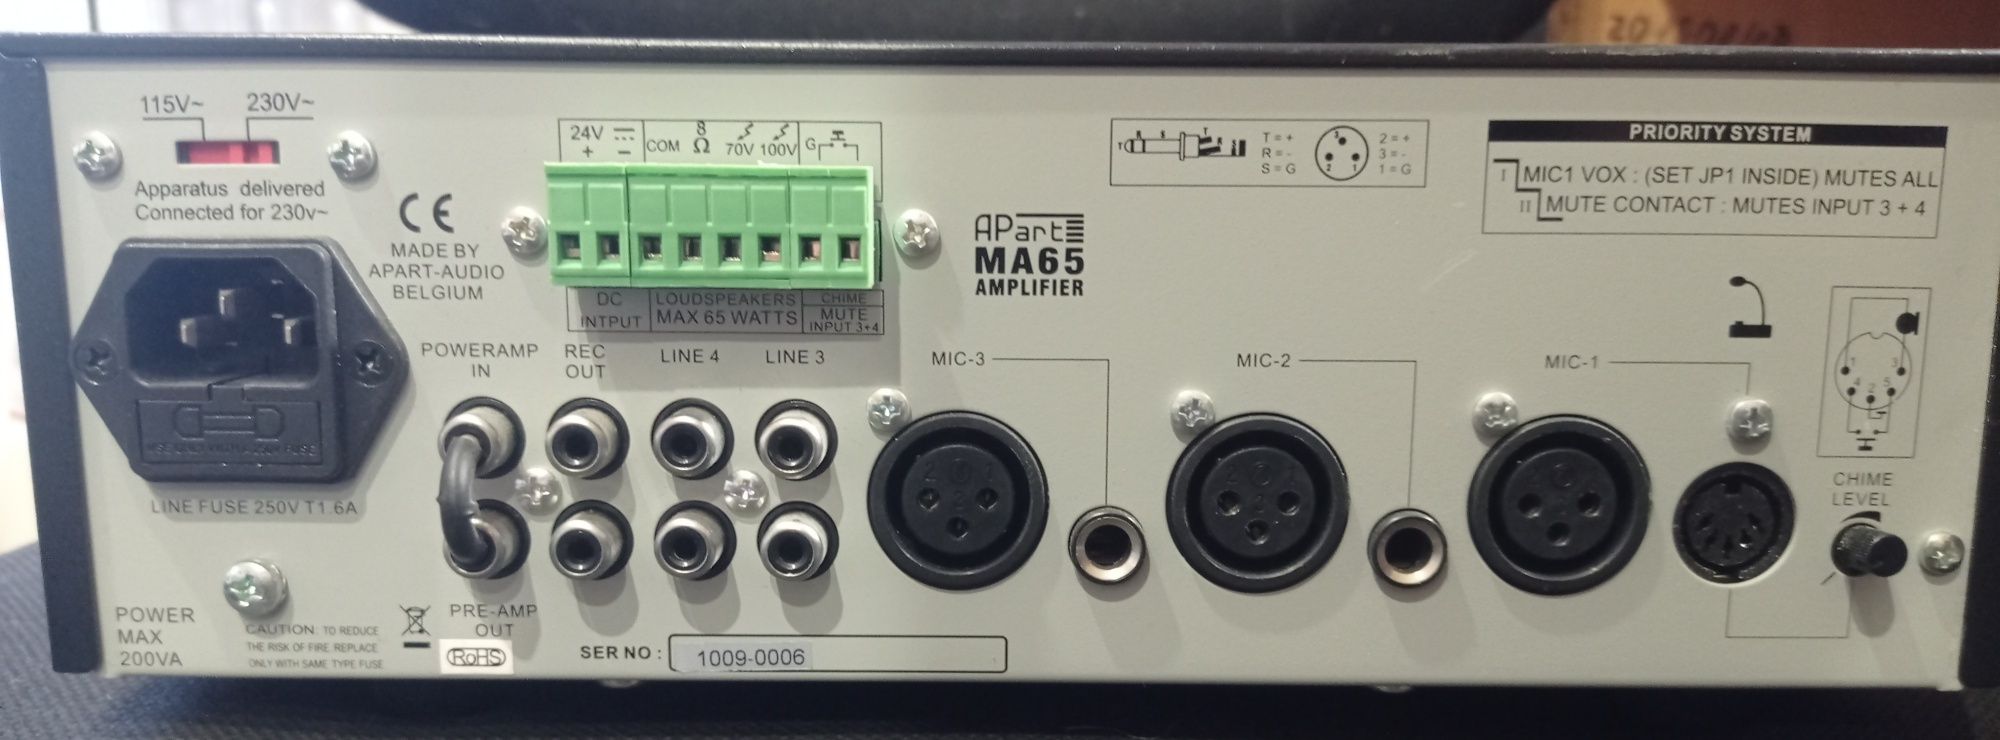 Мікшер трансляційний підсилювач APART MA65